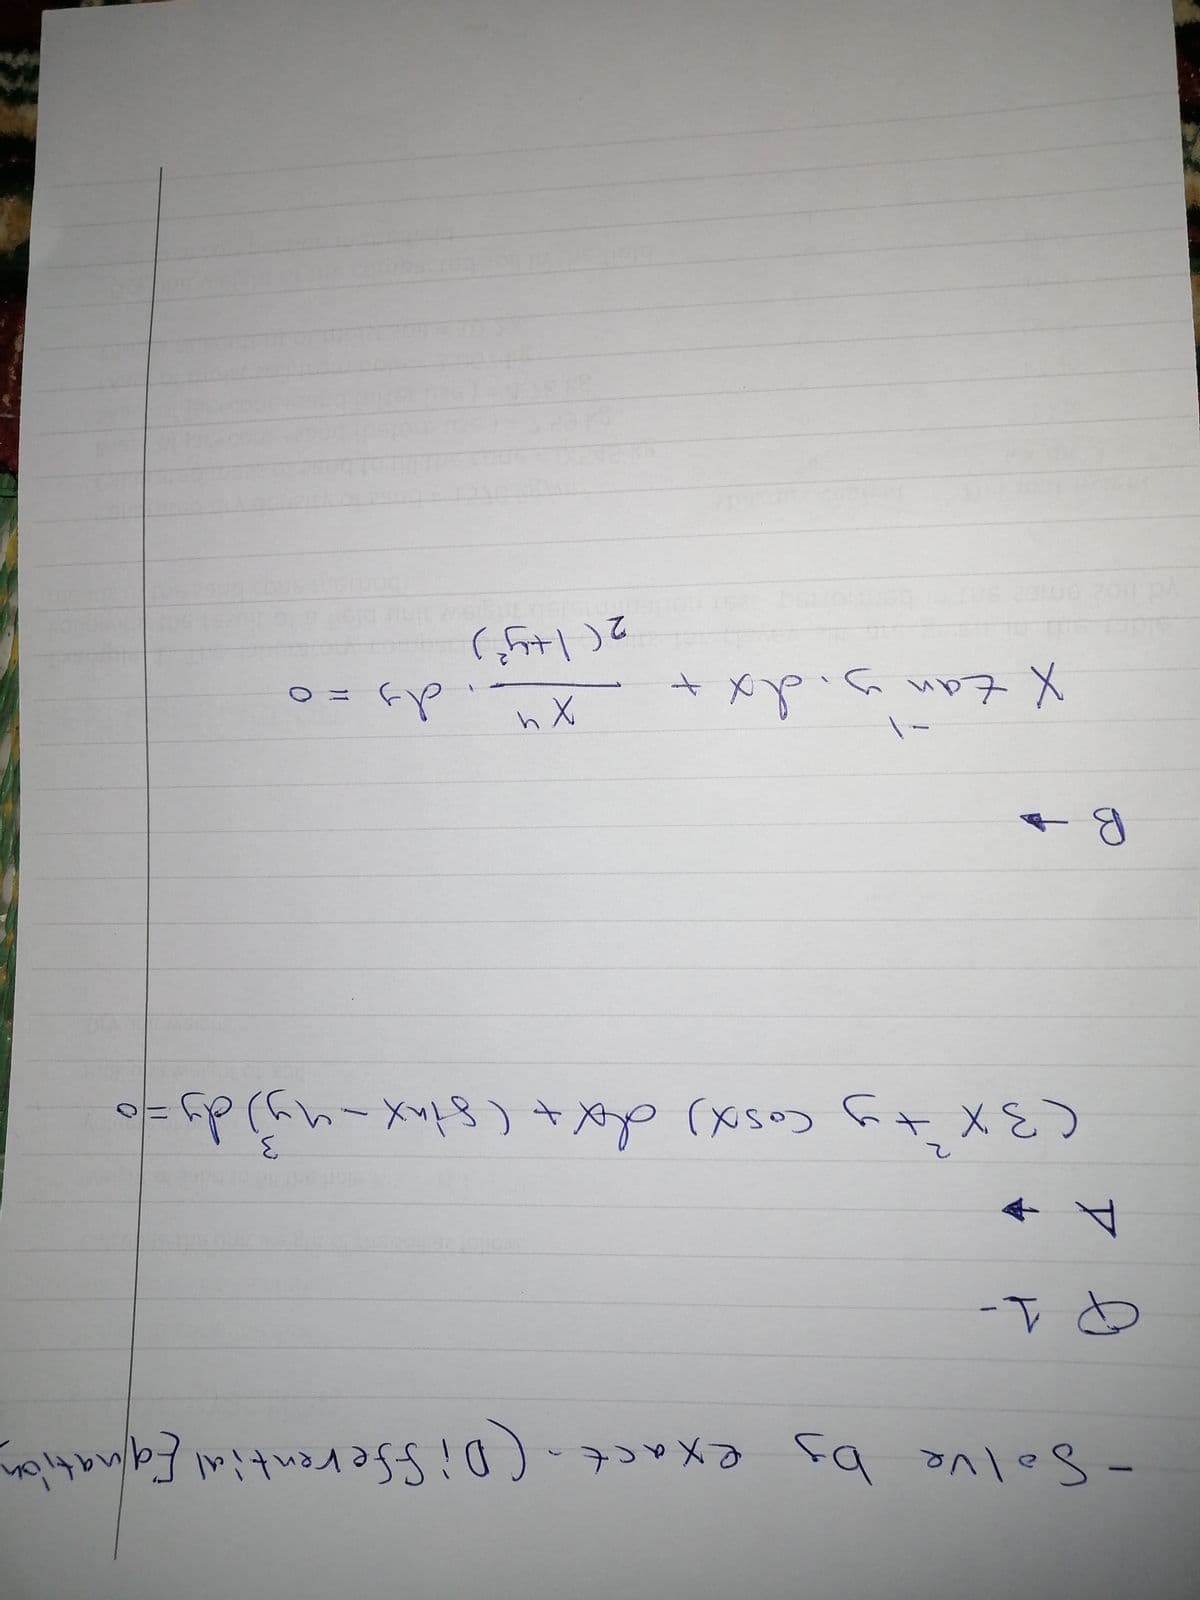 (+)て
○ニ
X tan yidメー
inx
Cosx)
-S0lve by exact.(Di fferential Ealnation
-Tと
1.
Solve
ア
二D
